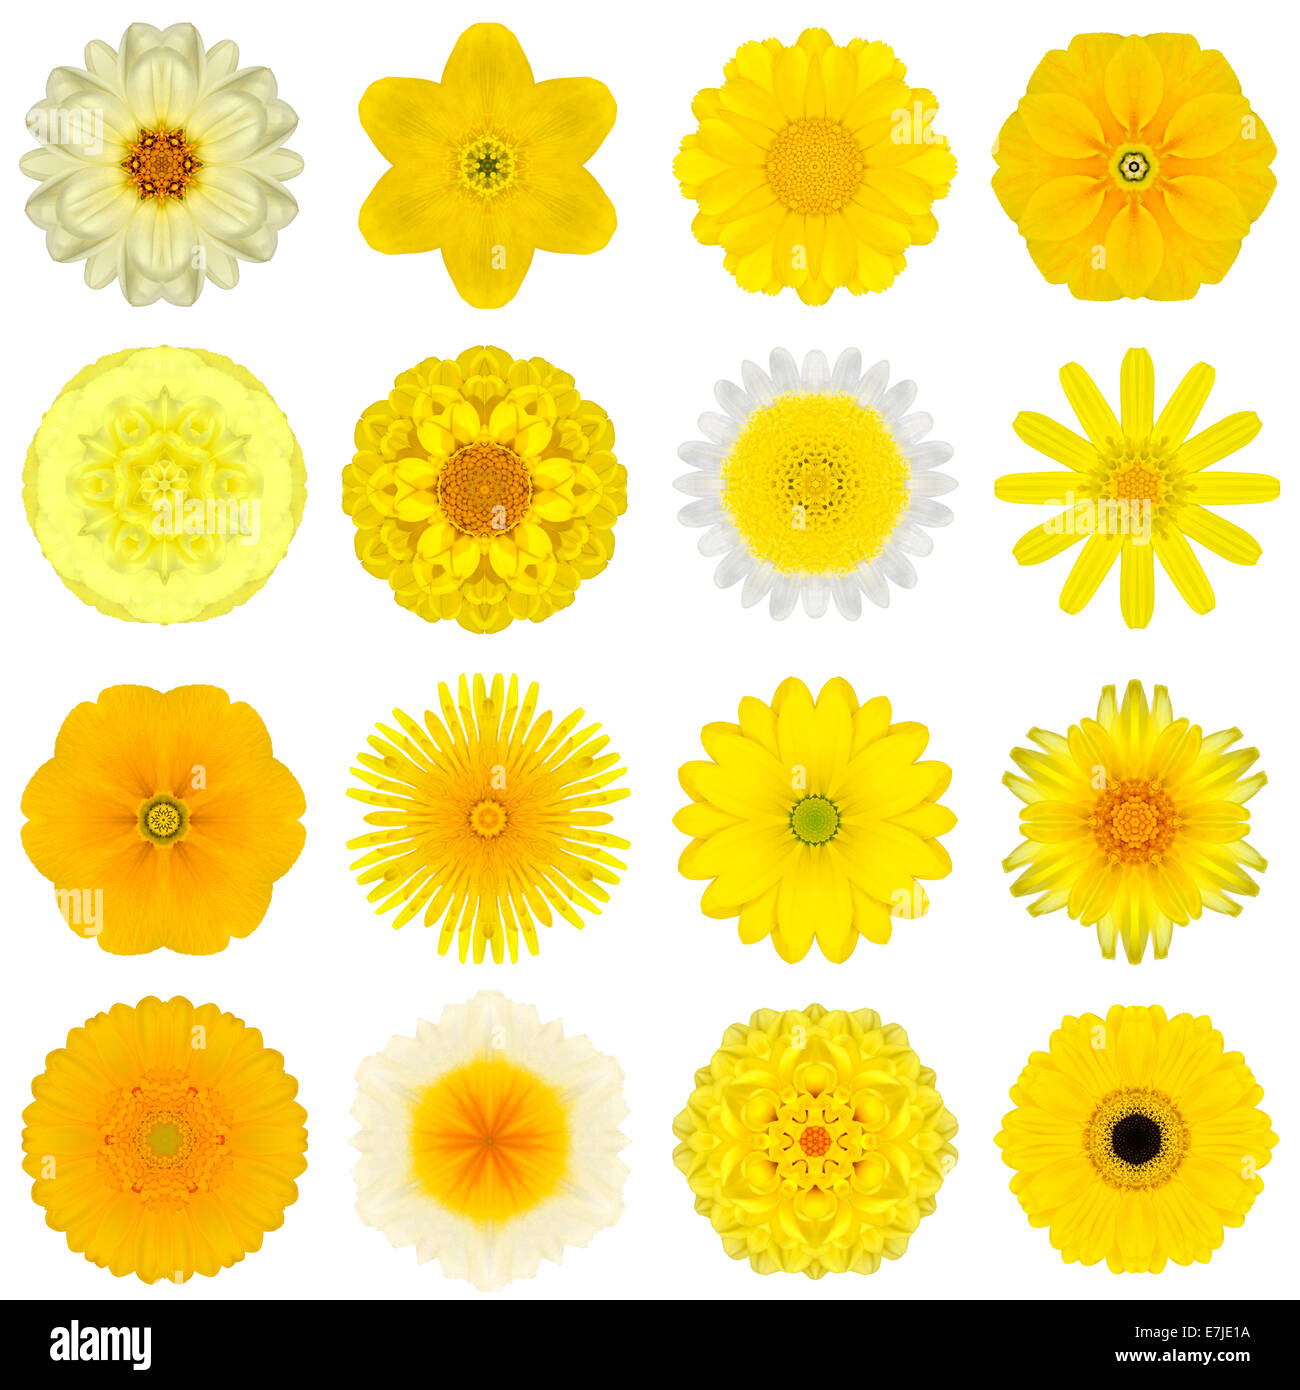 Große Sammlung von verschiedenen gelben konzentrische Muster Blumen. Kaleidoskopische Mandala-Muster, Isolated on White Background. Konzen Stockfoto